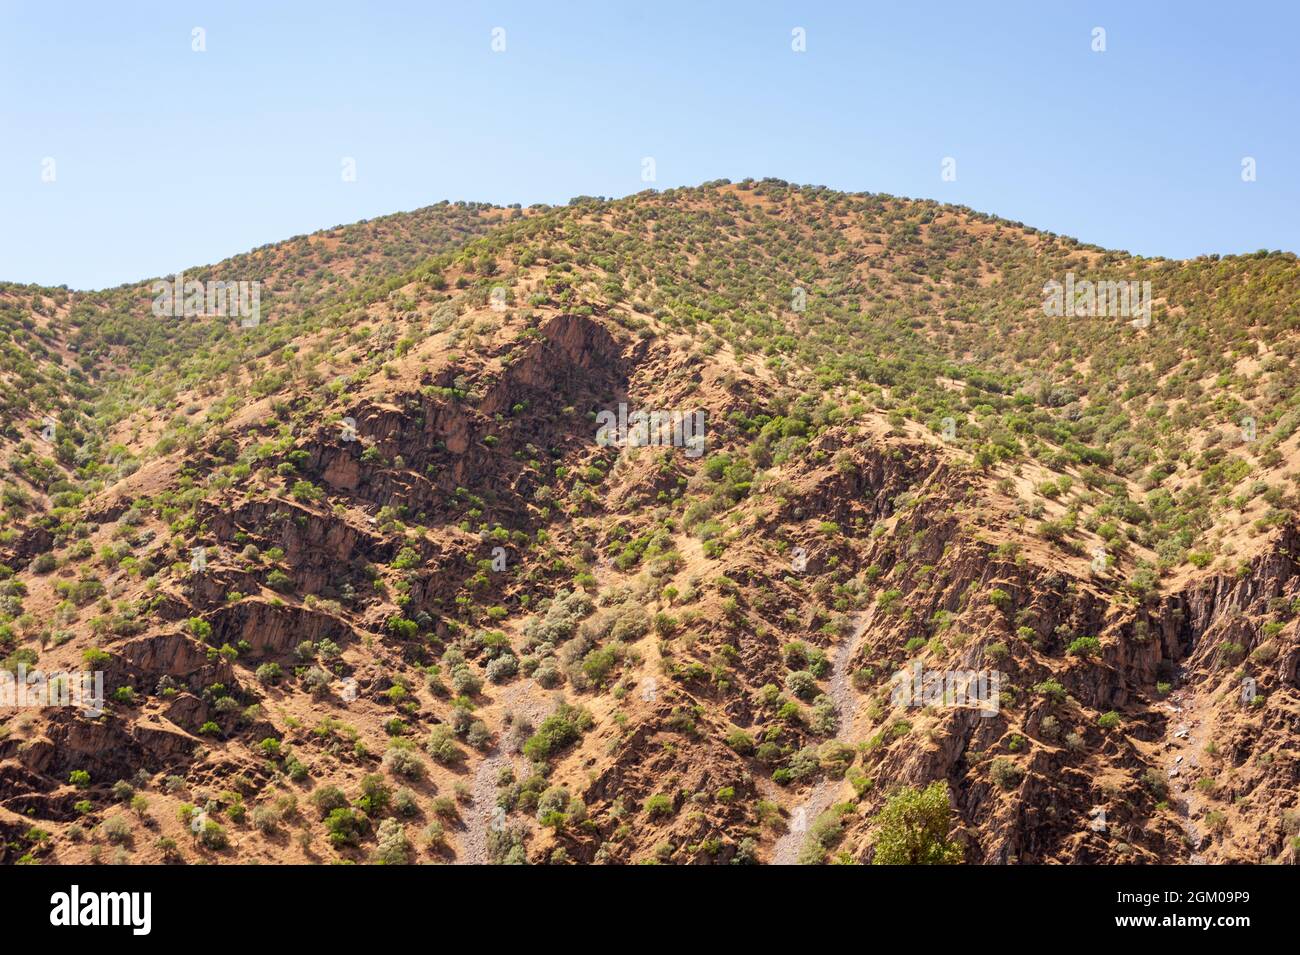 La formation de montagnes avec arbres, feuillage, herbe et ciel bleu dans la partie occidentale de l'iran, province du kurdistan, Iran Banque D'Images